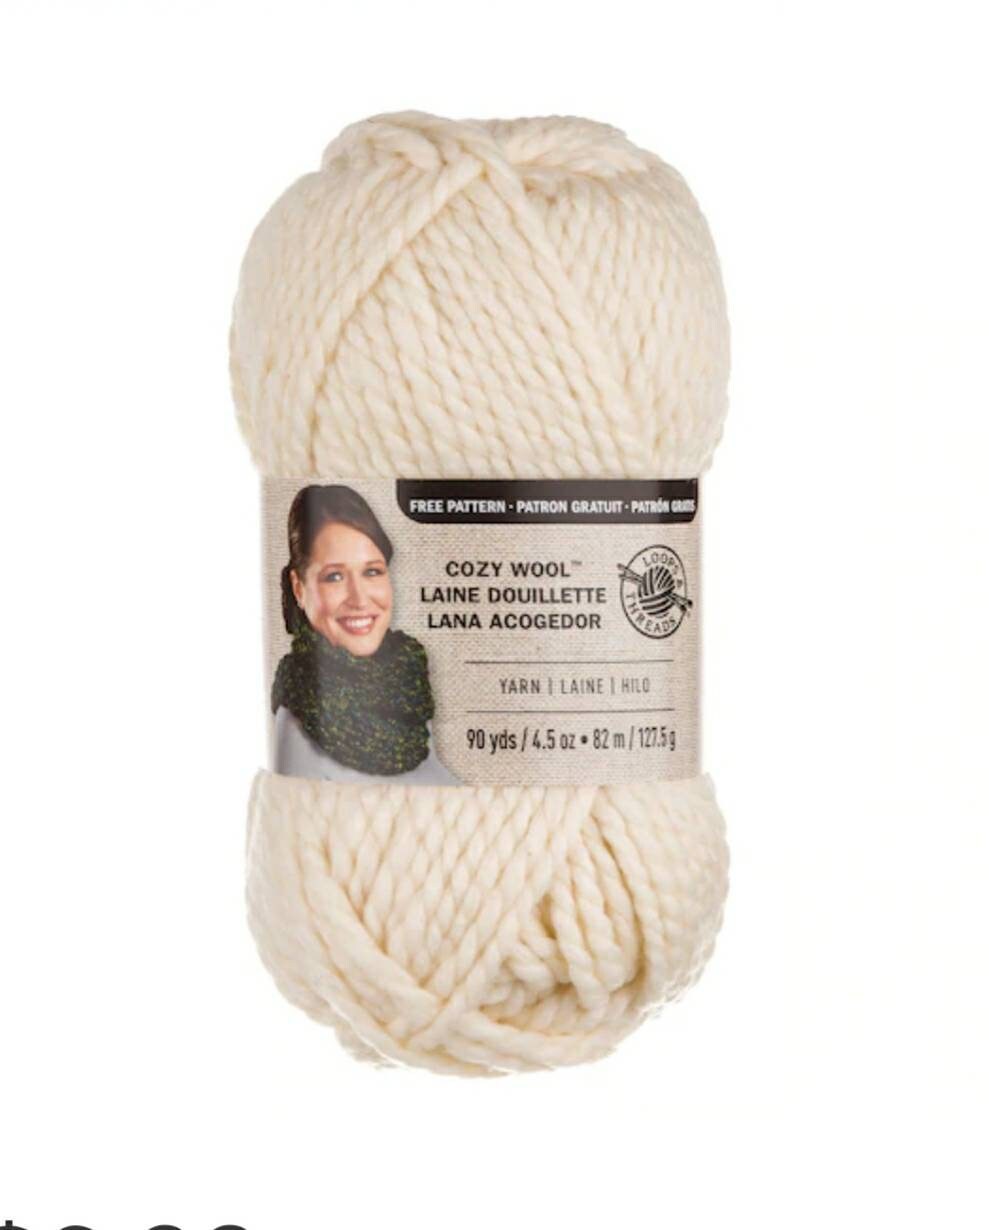 Cozy Wool™ Yarn by Loops & Threads®